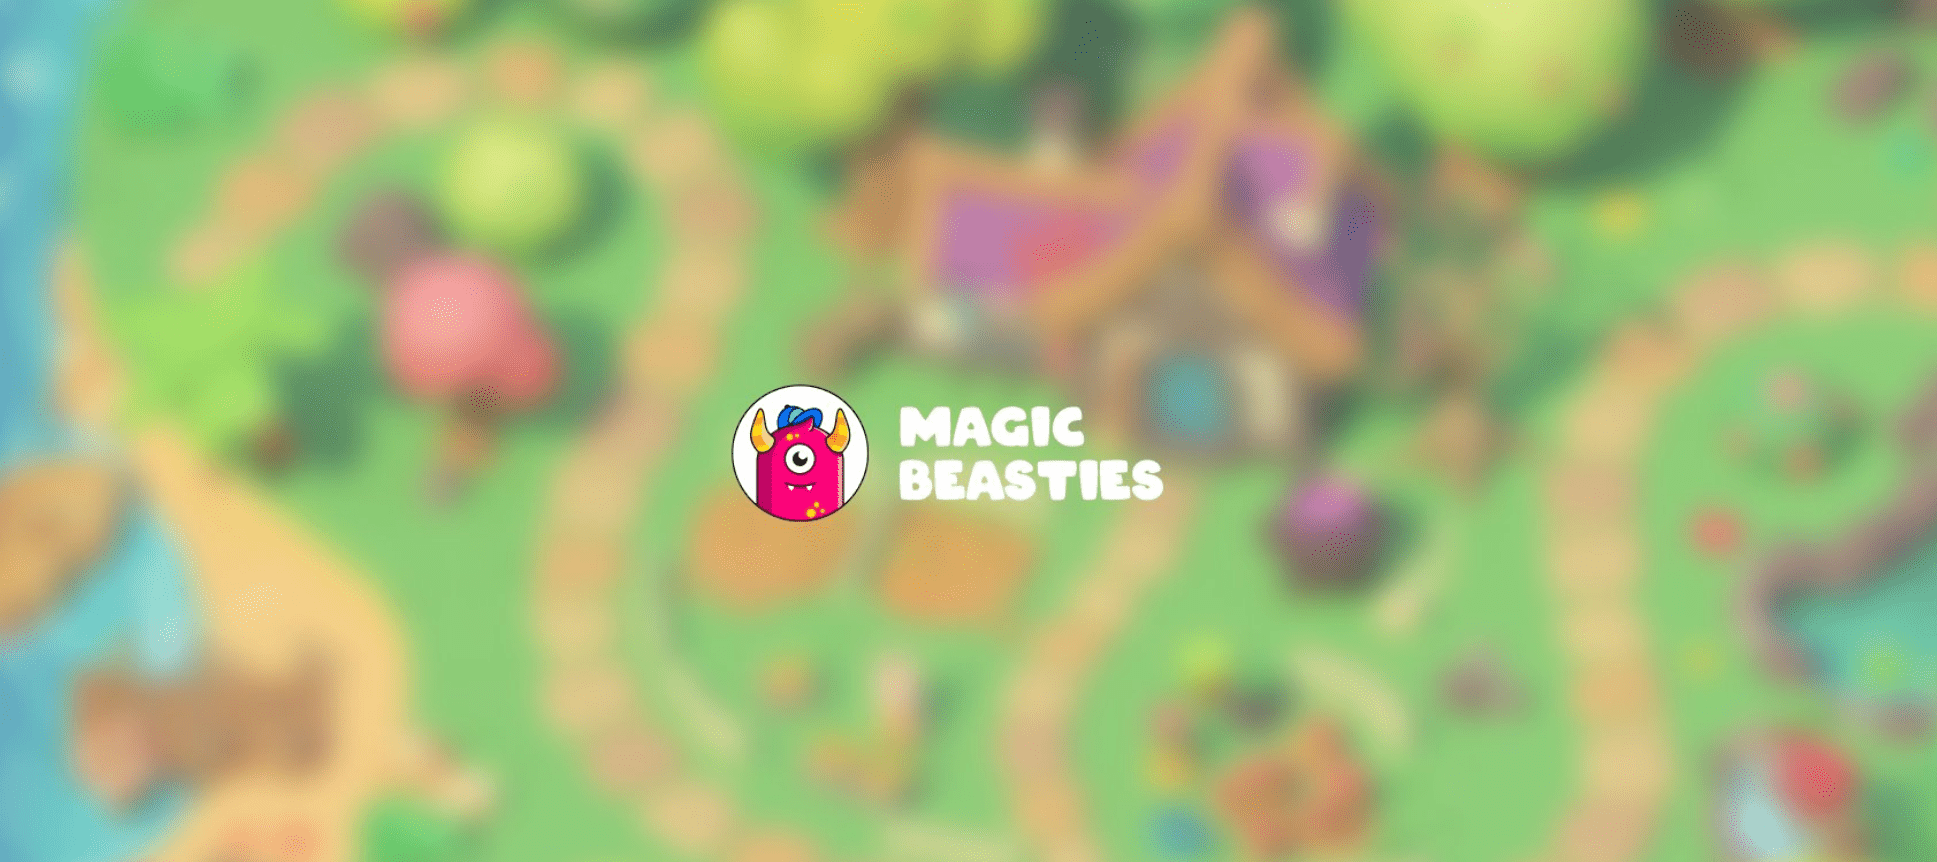 Magic Beasties: лучшая игра в браузере